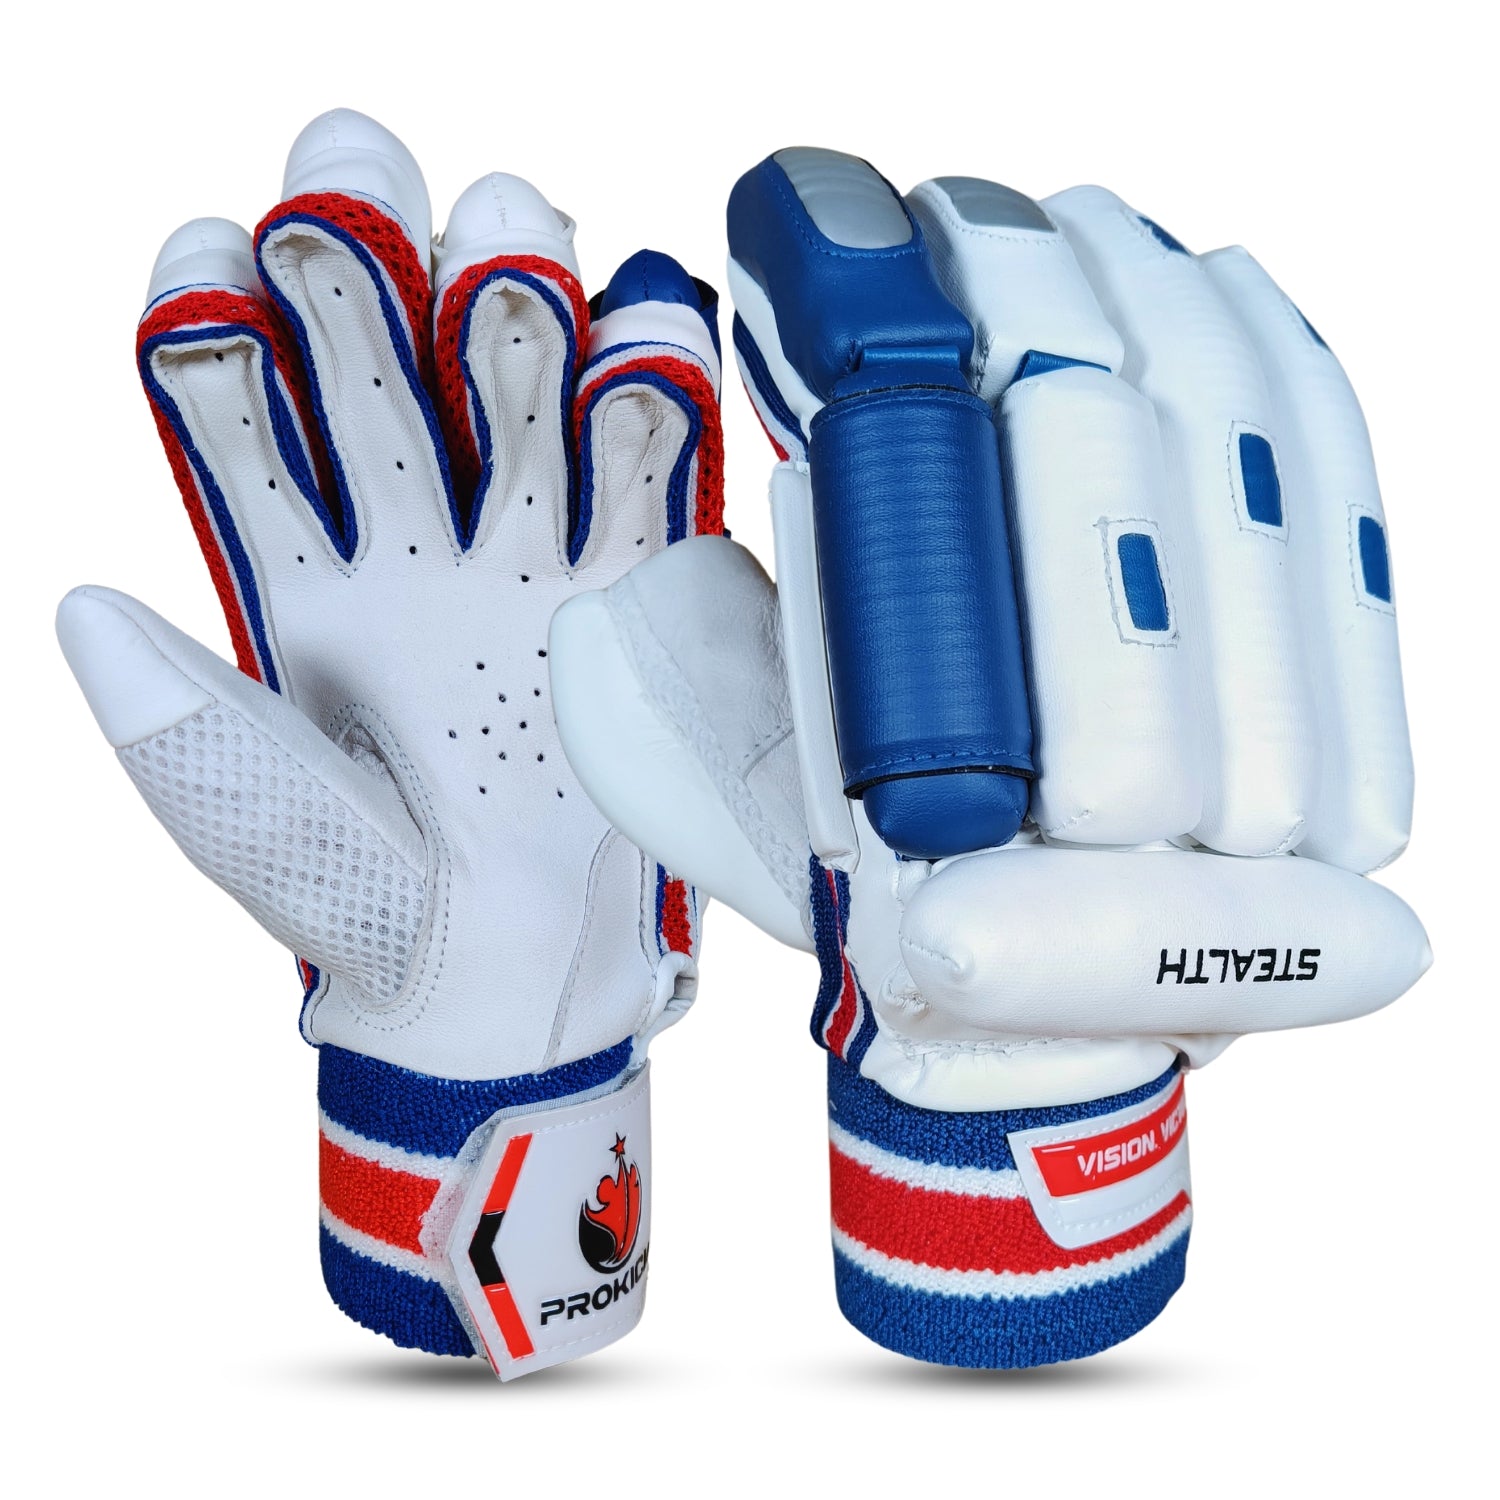 Prokick Stealth RH Cricket Batting Gloves - Best Price online Prokicksports.com